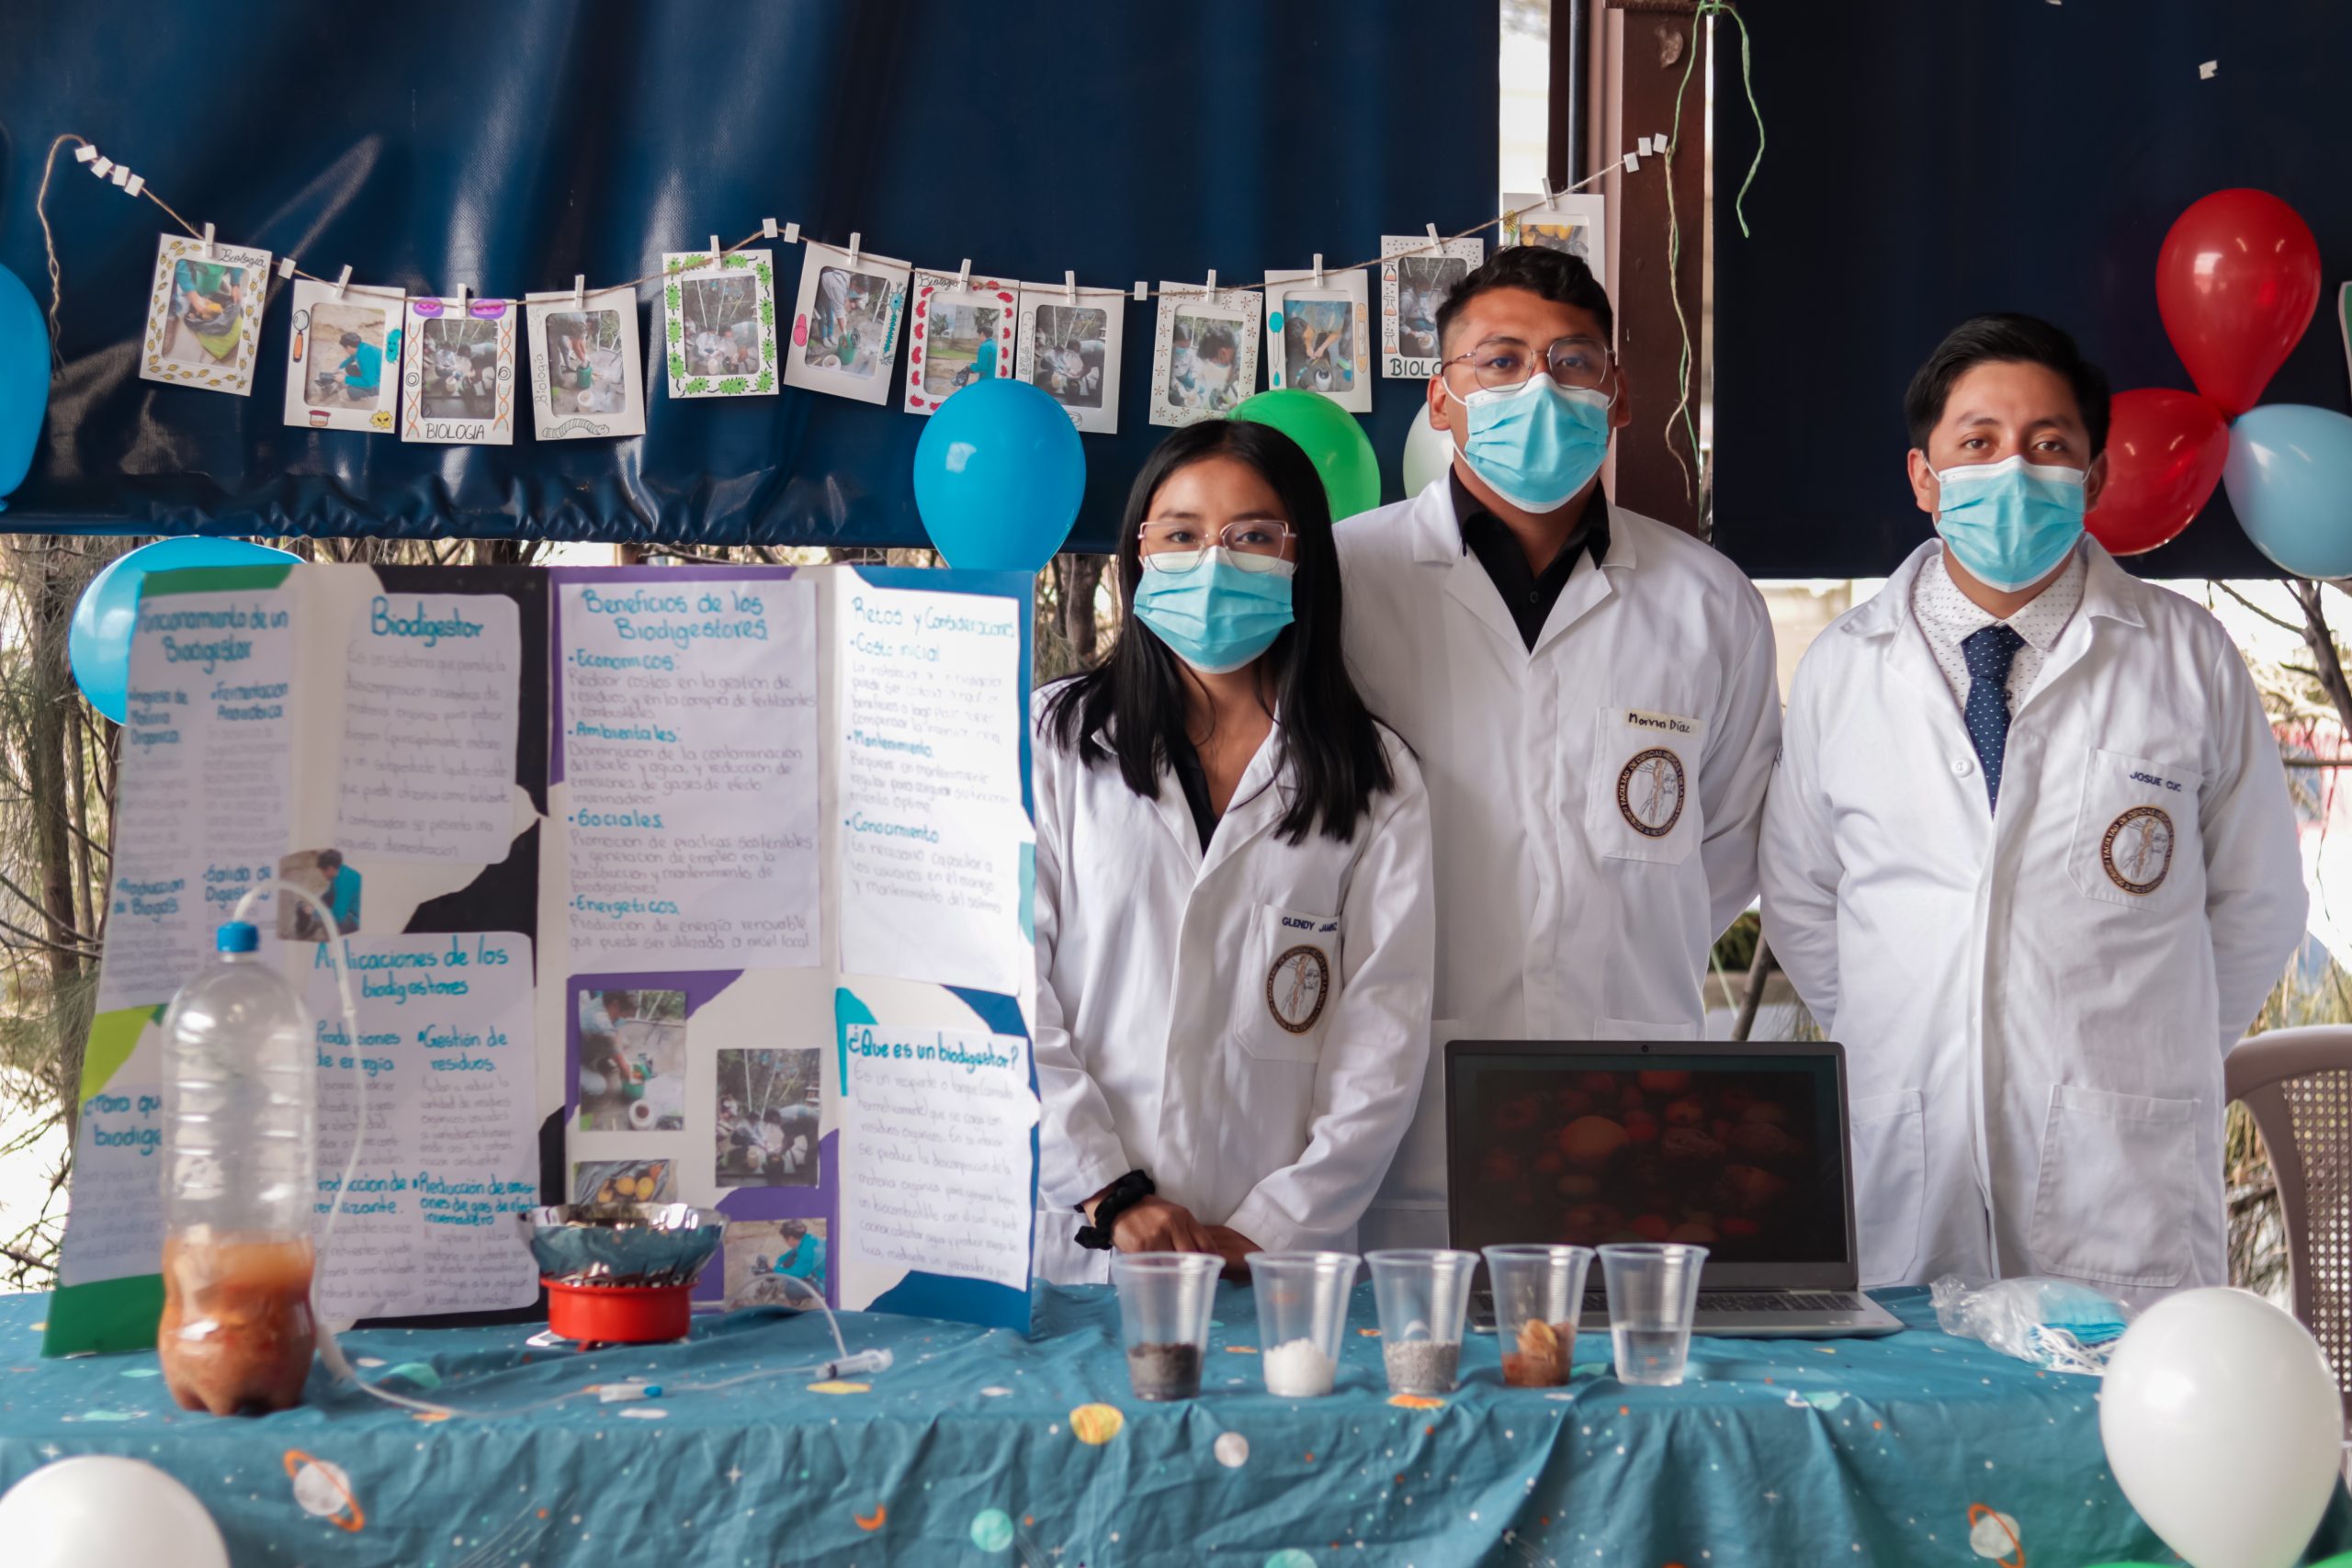 Estudiantes de Primer Año de Medicina Impresionan en Feria de Ciencias | Universidad da Vinci de Guatemala